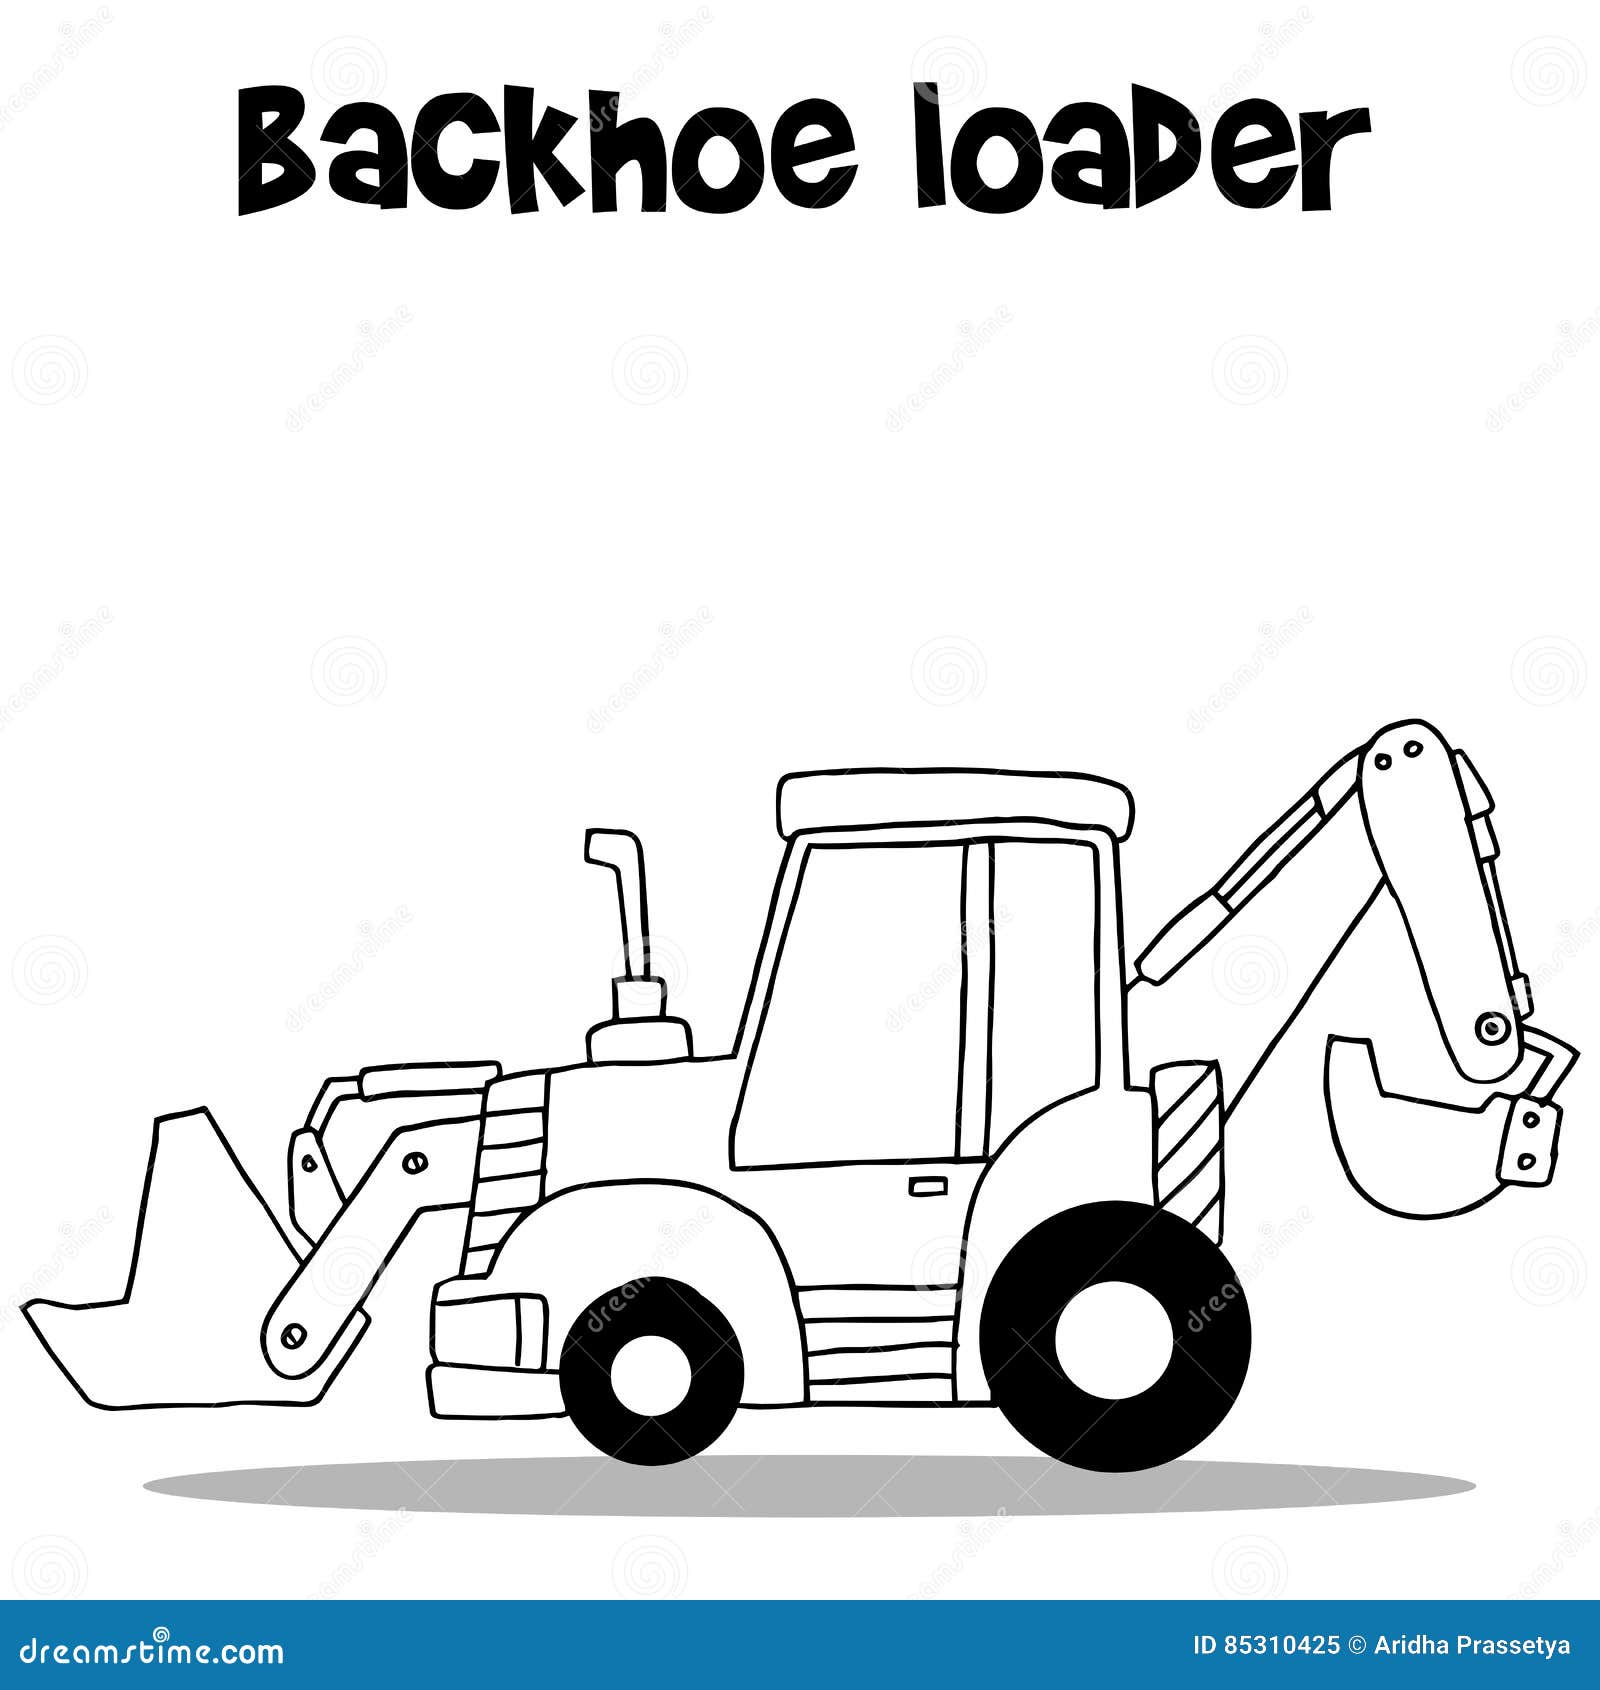 Sketch of a backhoe loader Royalty Free Vector Image